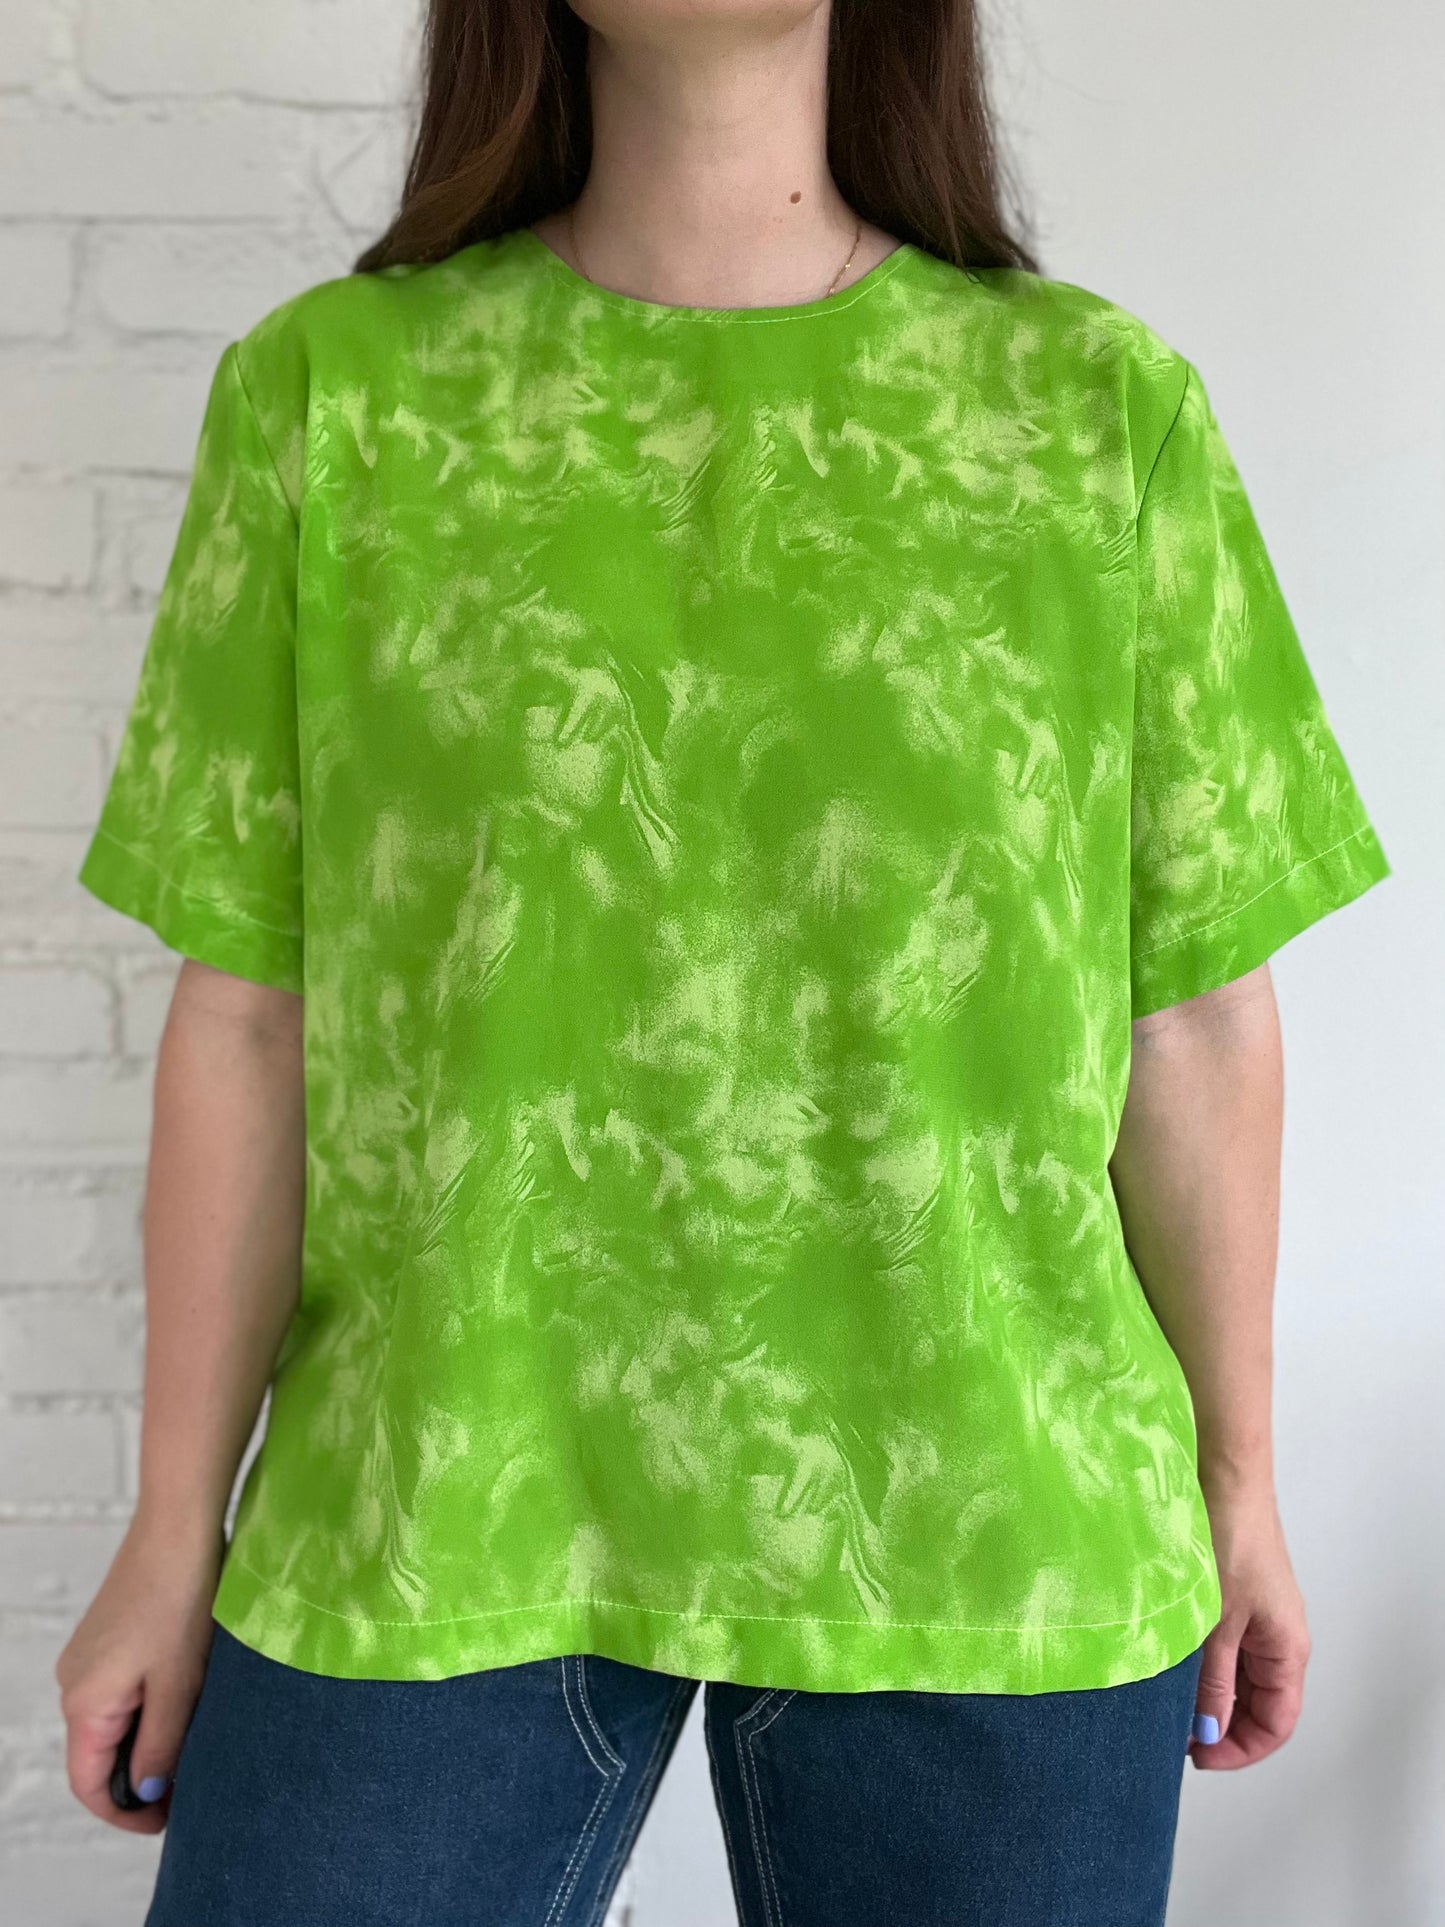 Tie Dye Neon Green Blouse - XL